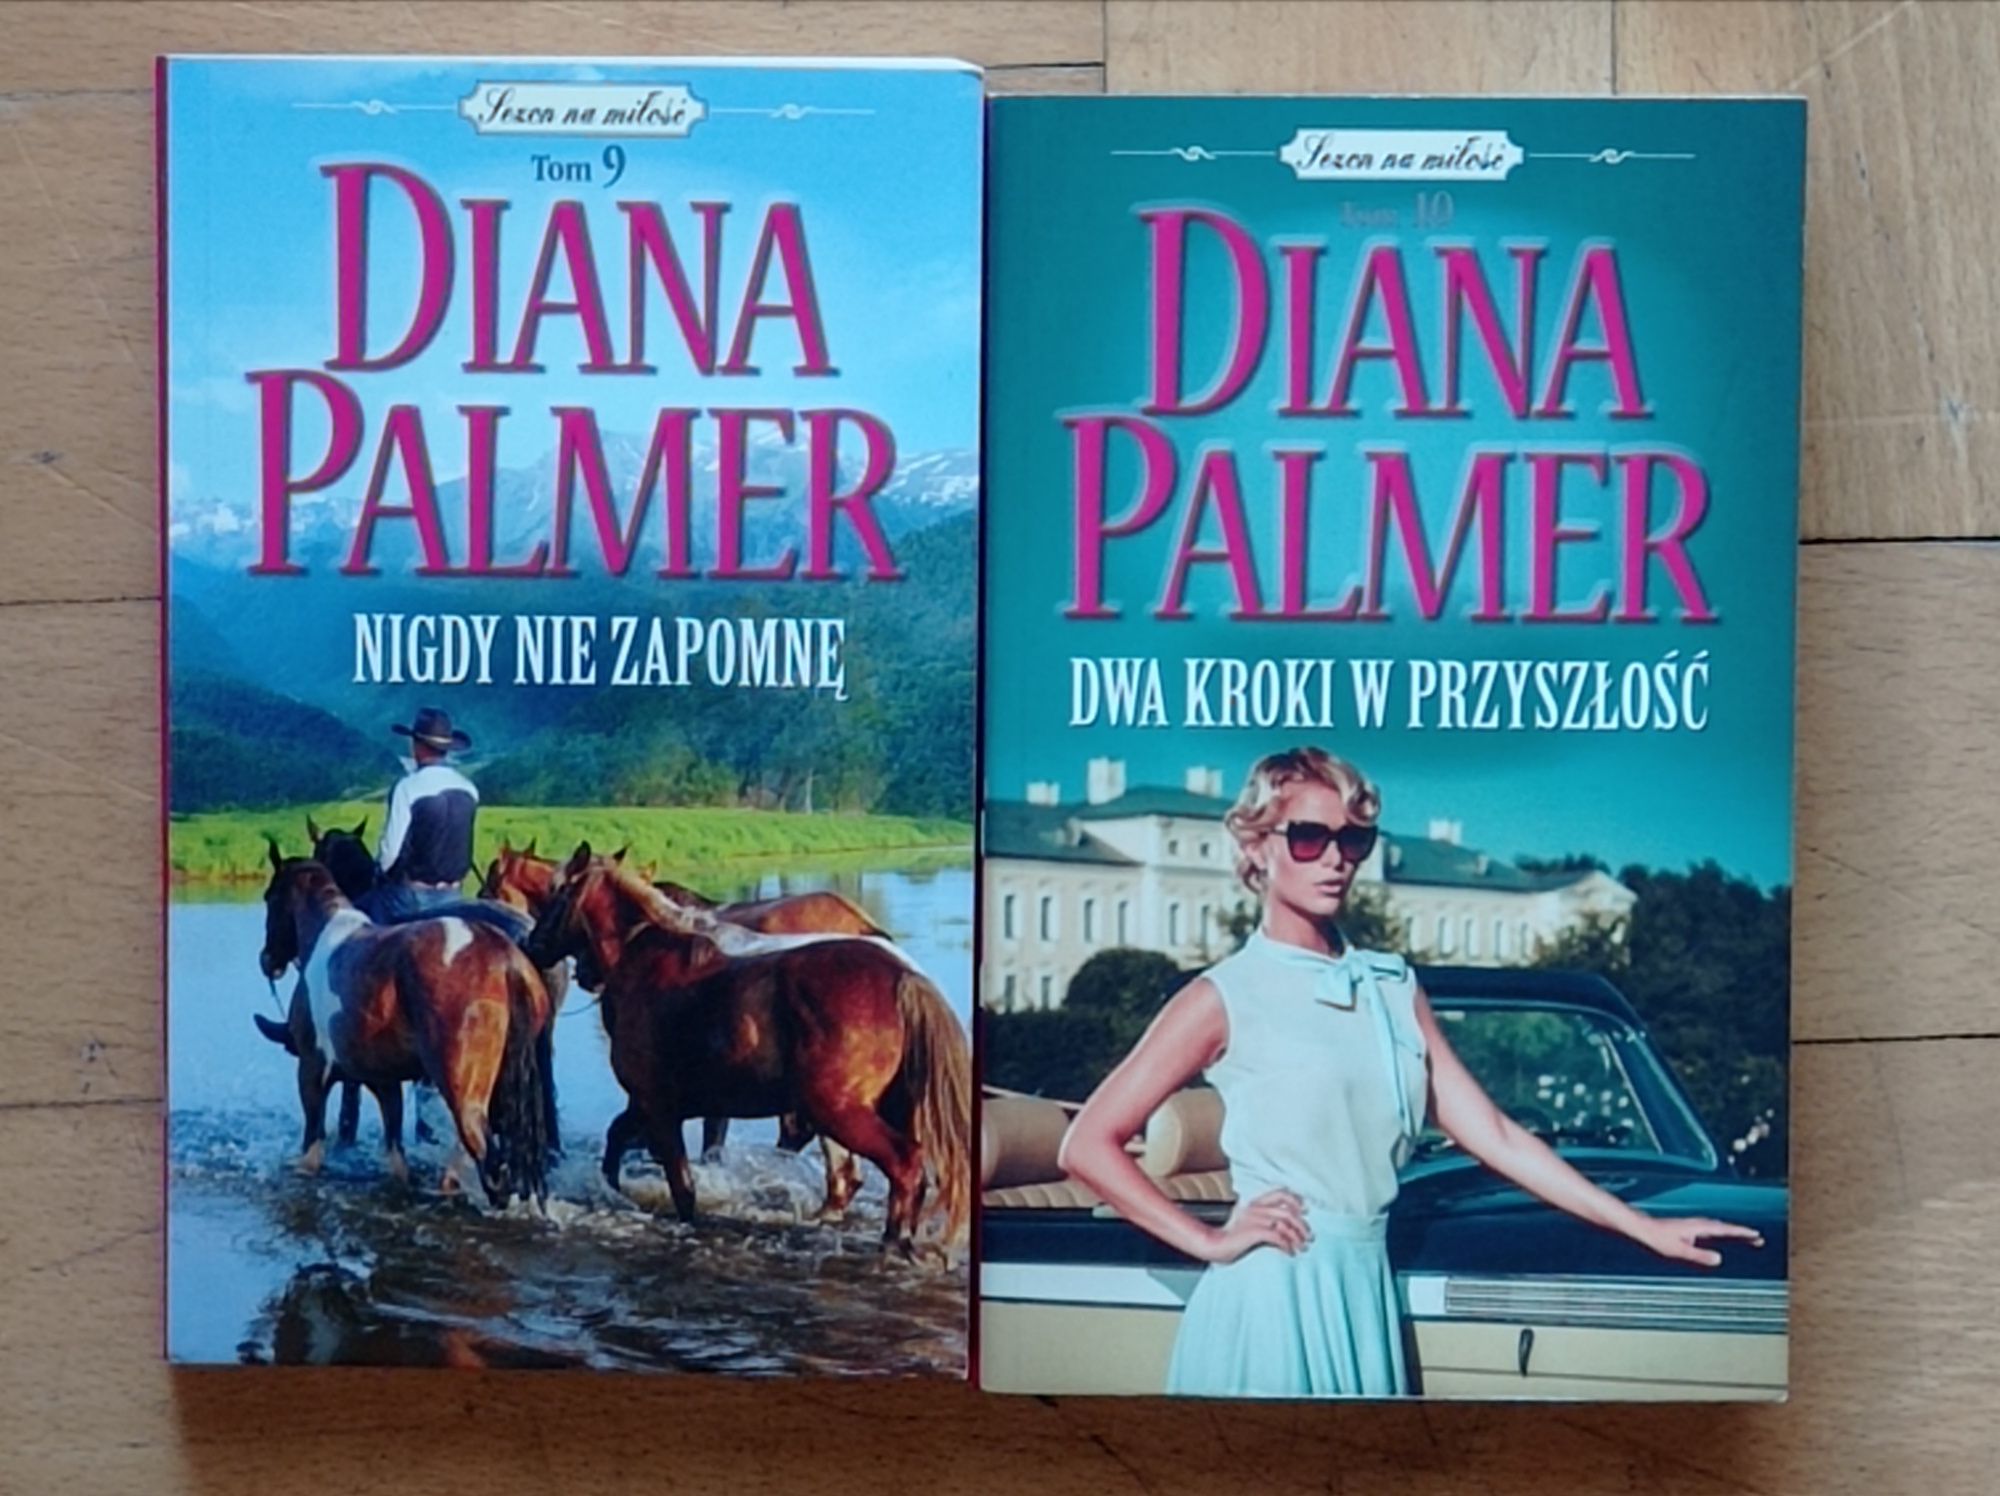 Diana Palmer Sezon na miłość 10 tomów